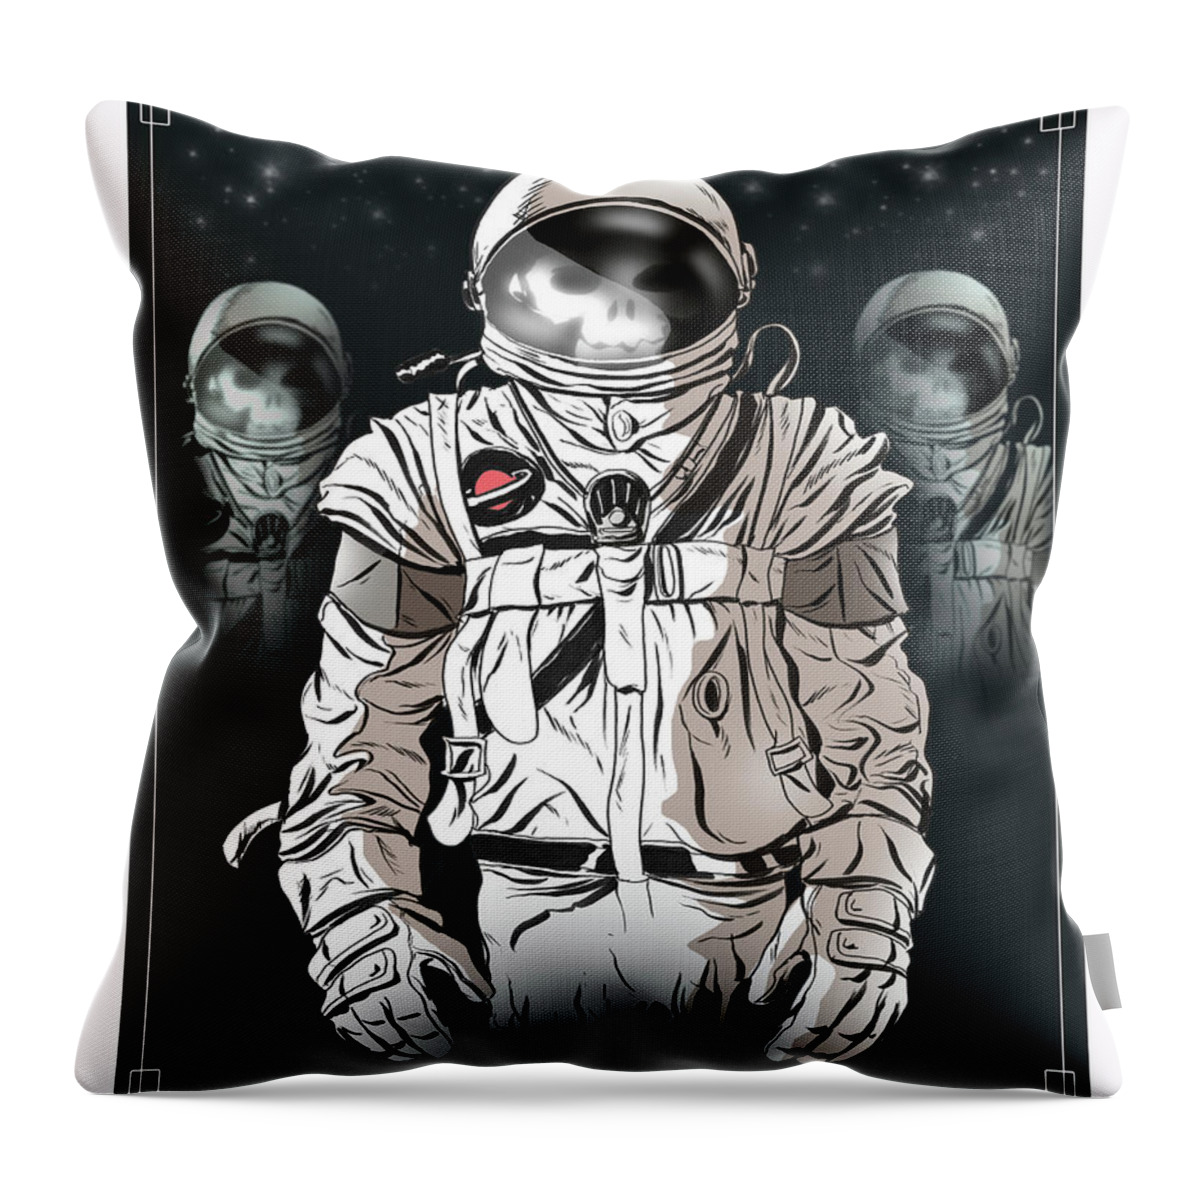 Ghosts Throw Pillow featuring the digital art Space Phantoms by Kynn Peterkin